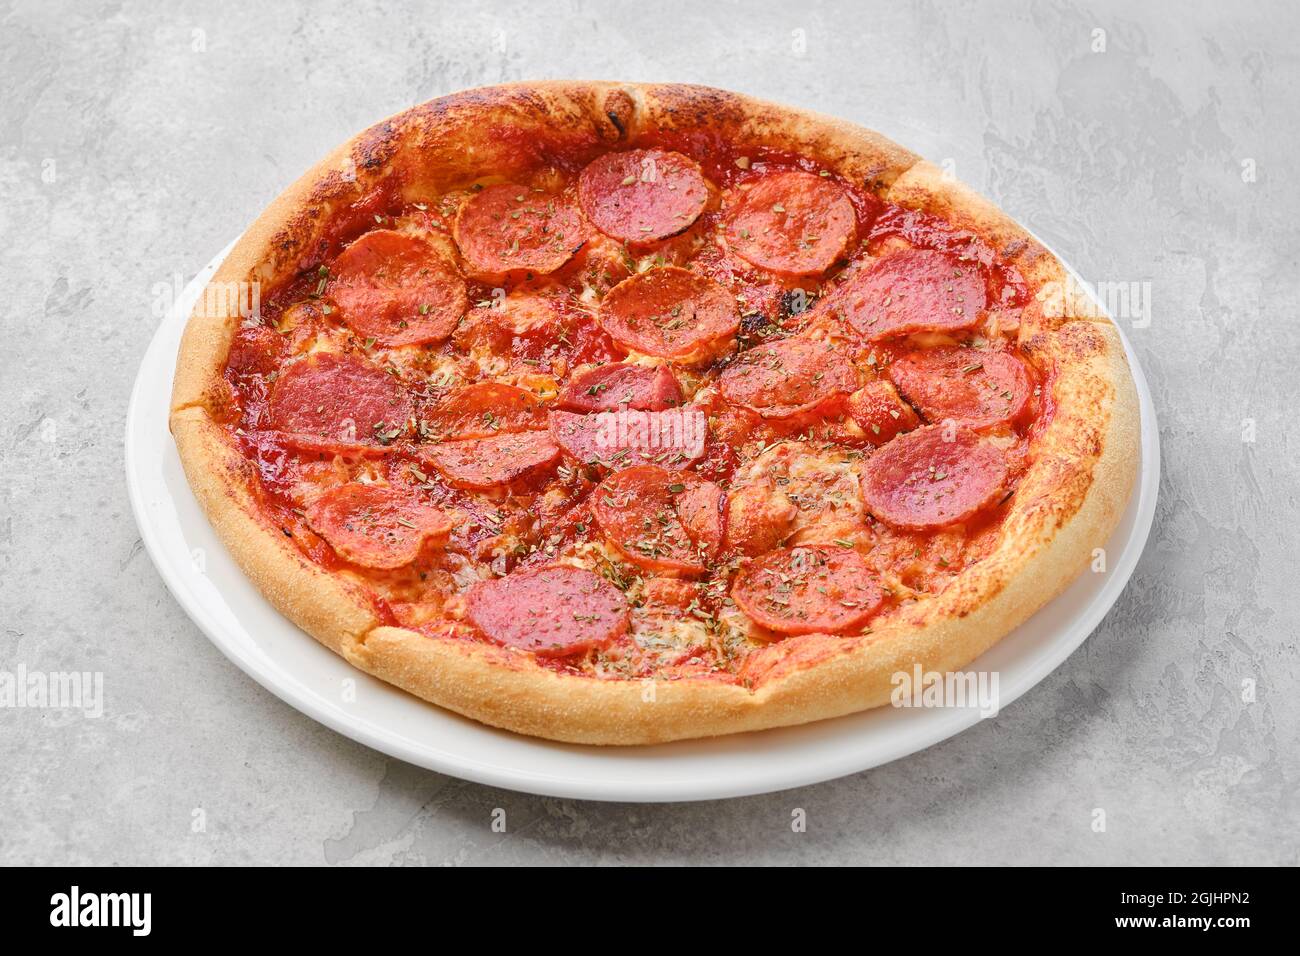 Pizza pepperoni de petite taille sur une assiette Banque D'Images